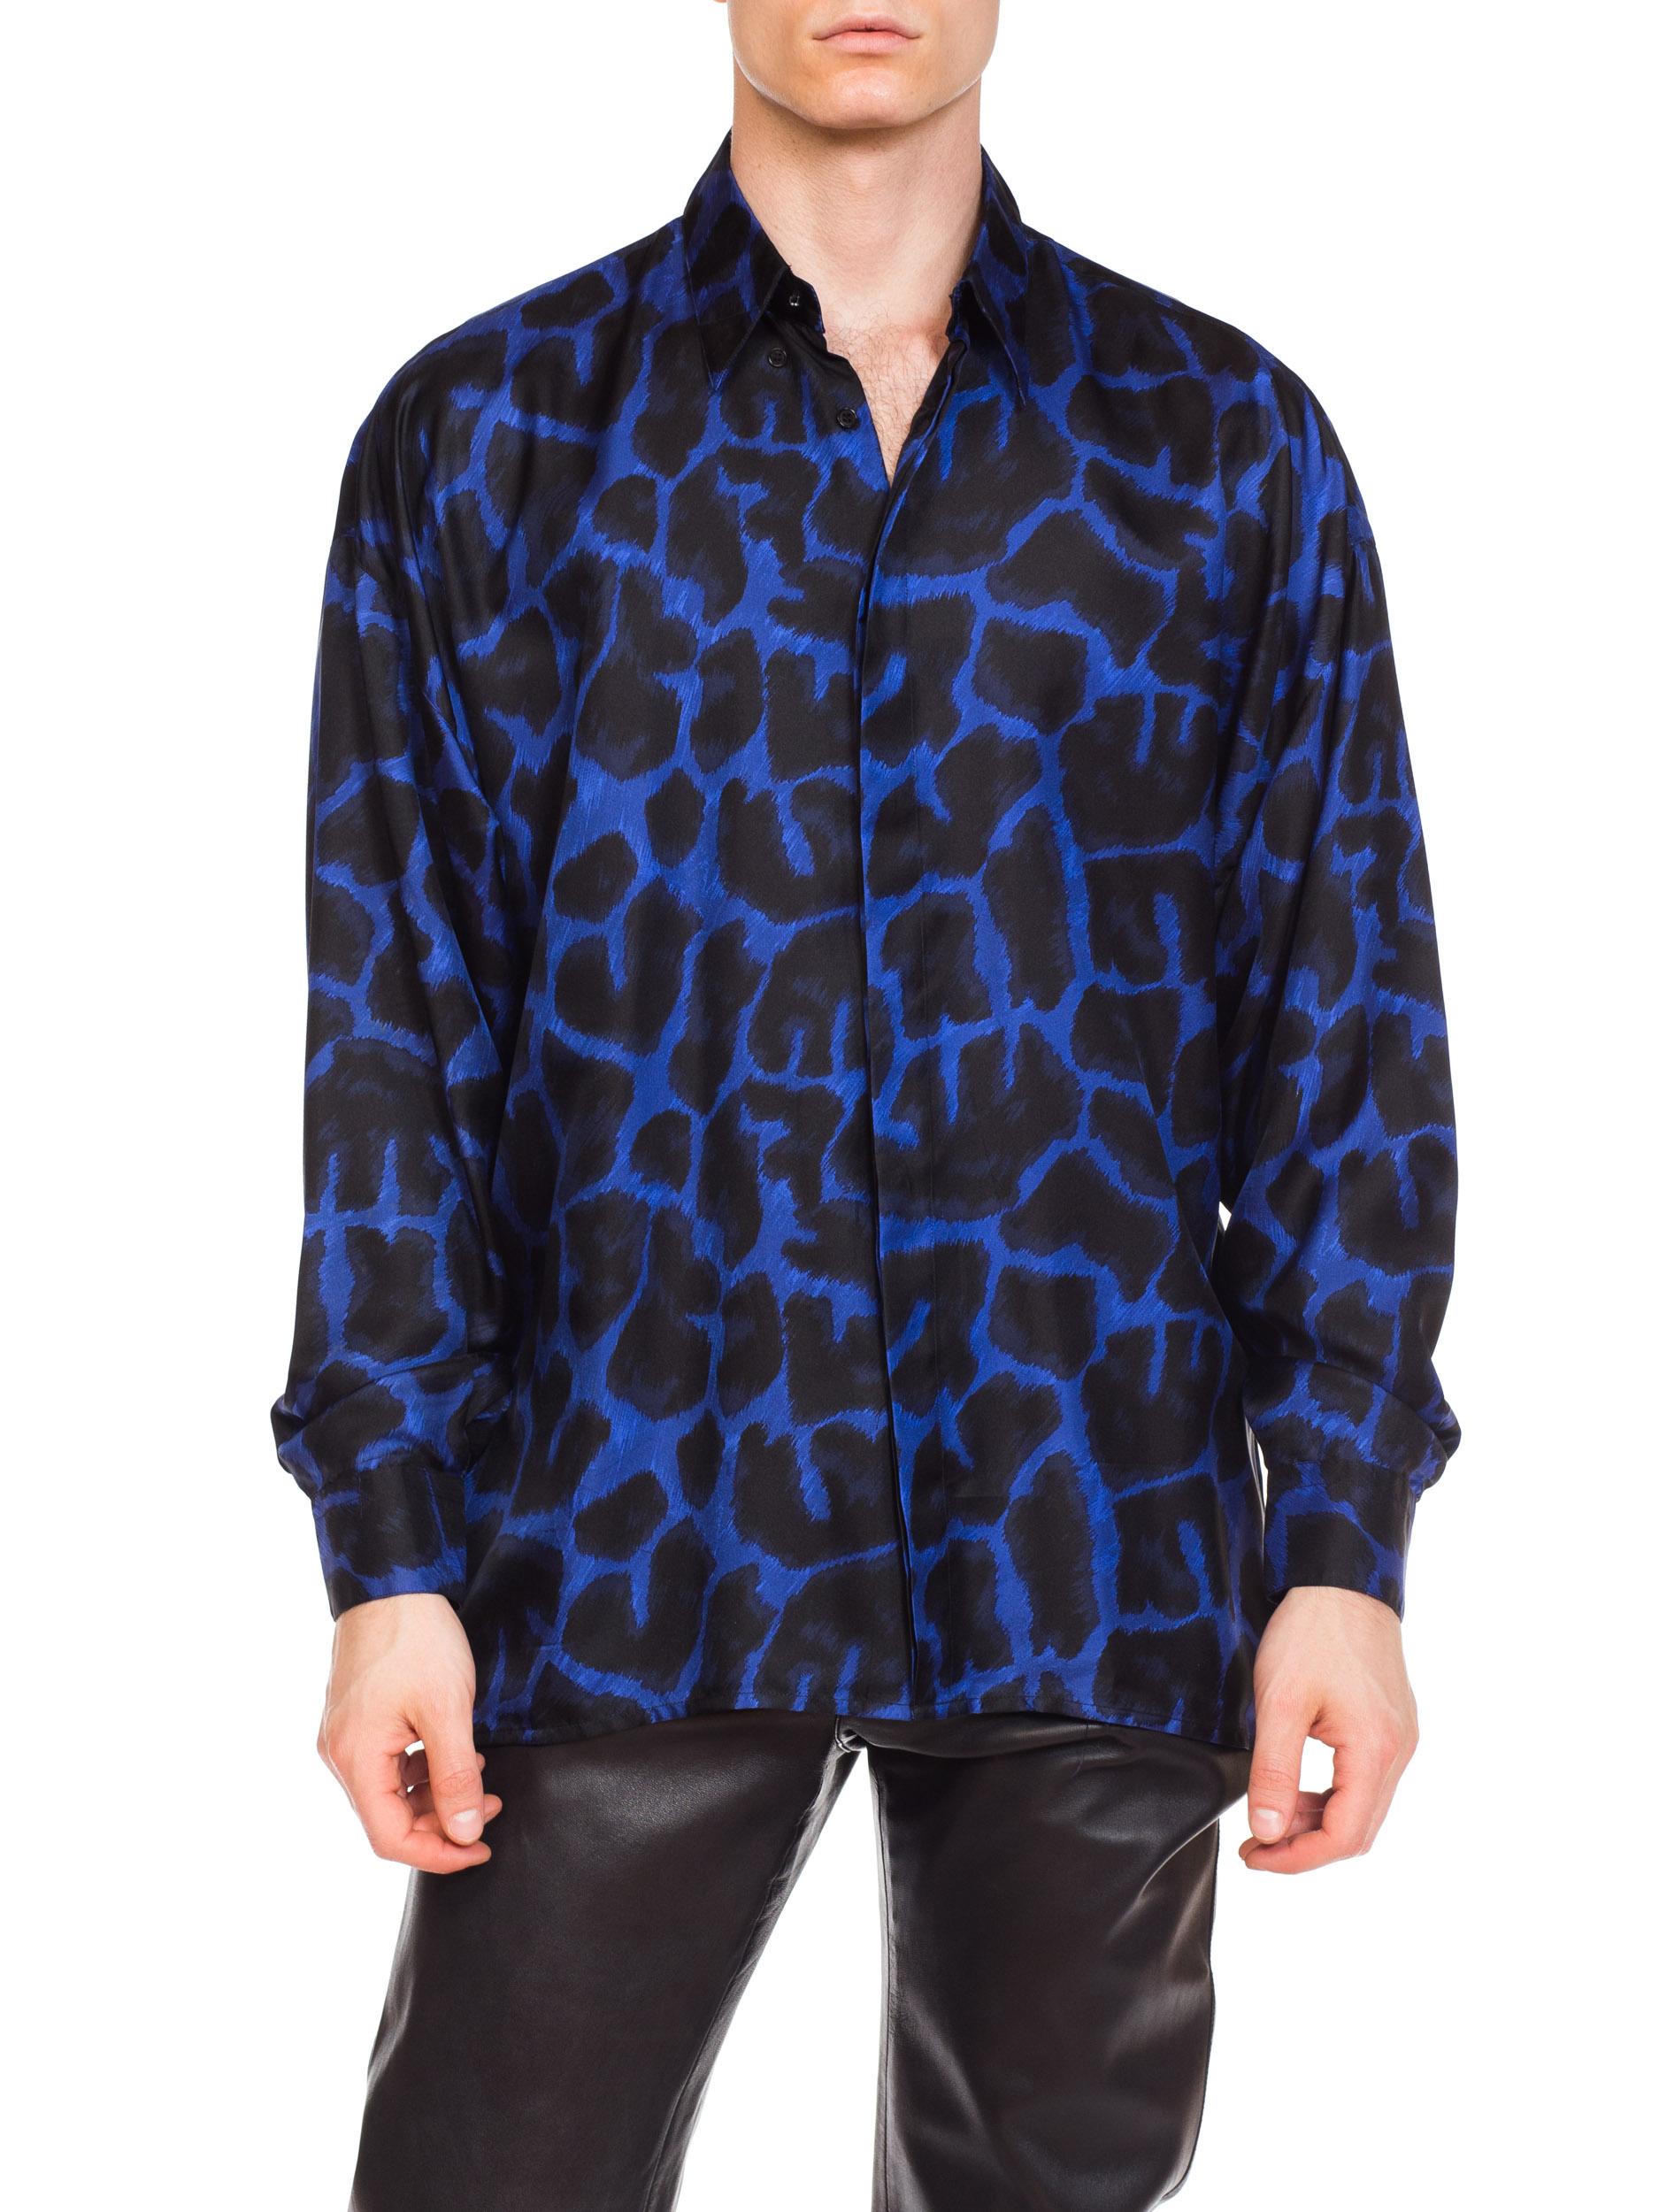 versace mens leopard shirt